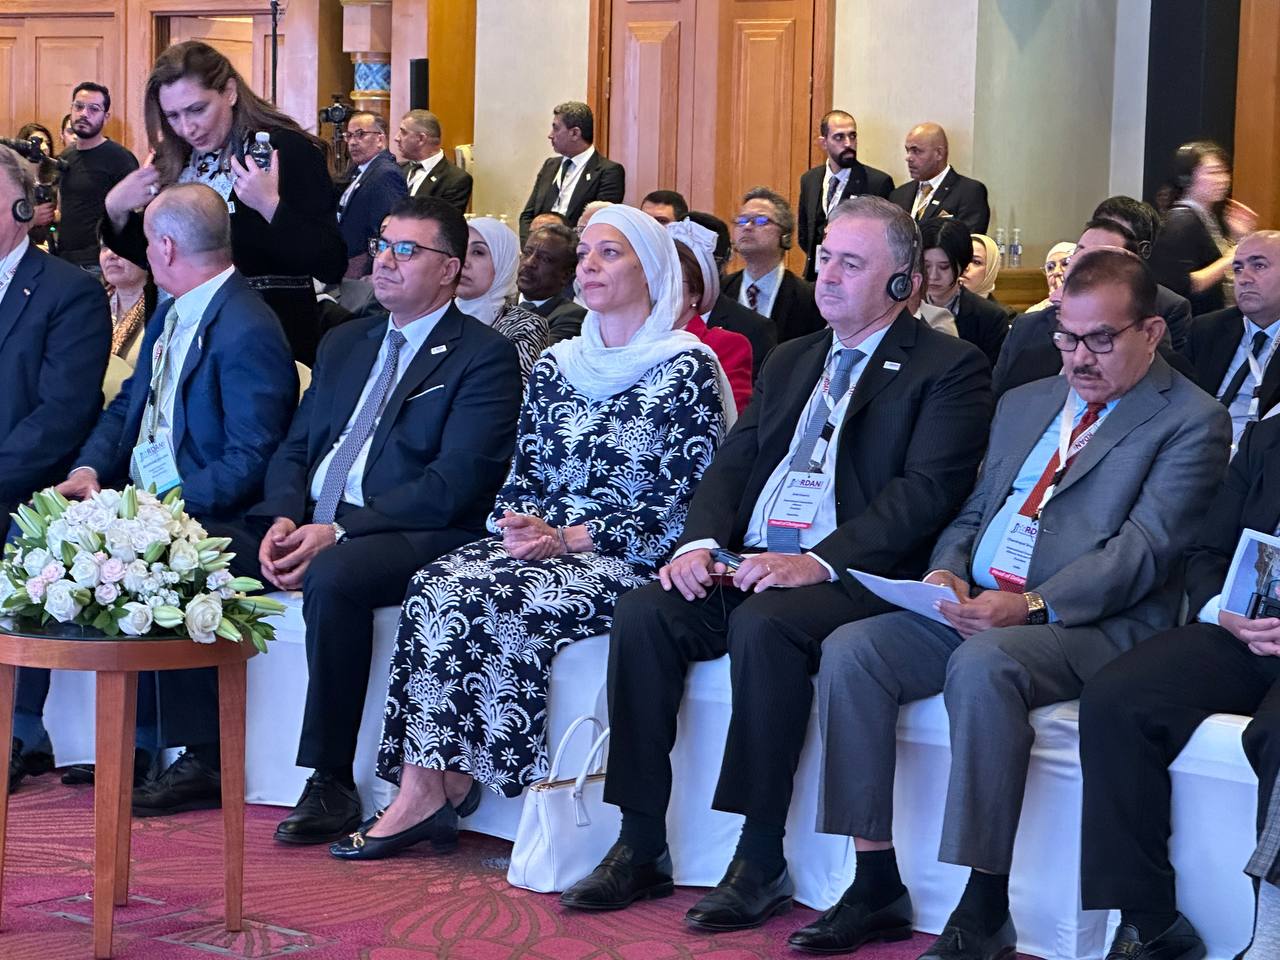 تحت رعاية دولة رئيس الوزراء "افتتاح أعمال المُؤتمر الوزاري التعاونيّ الحادي عشر فِي الأردن بمشاركة (30) دولة"